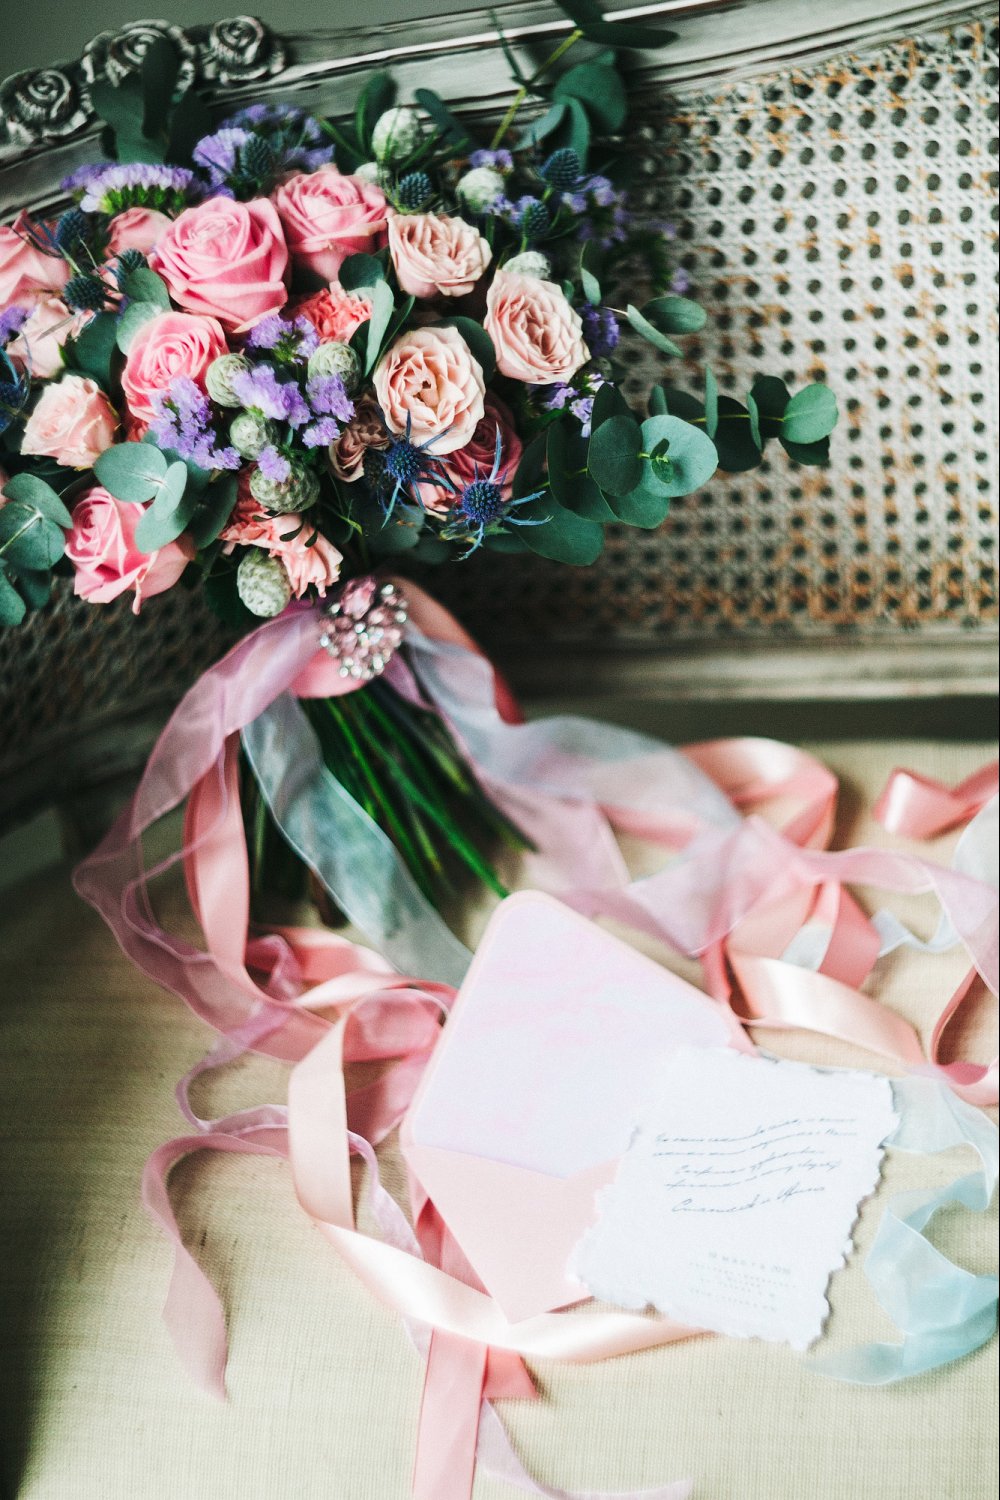 Свадьба в новых цветовых решениях 2016 года - Розовый кварц и Безмятежность